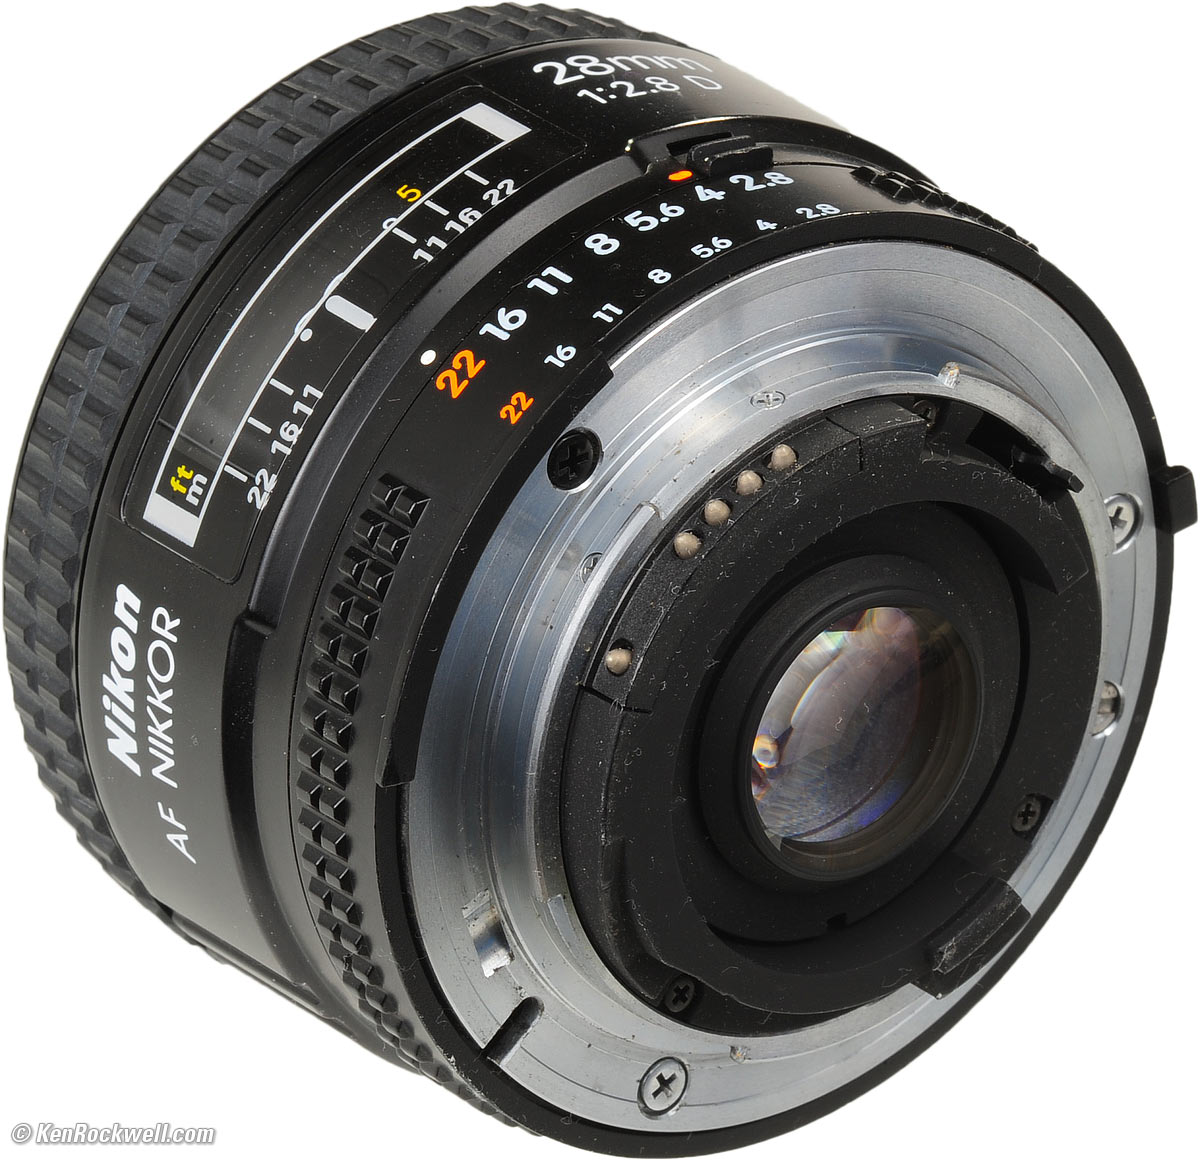 Nikon 28mm f/2.8 AF-D